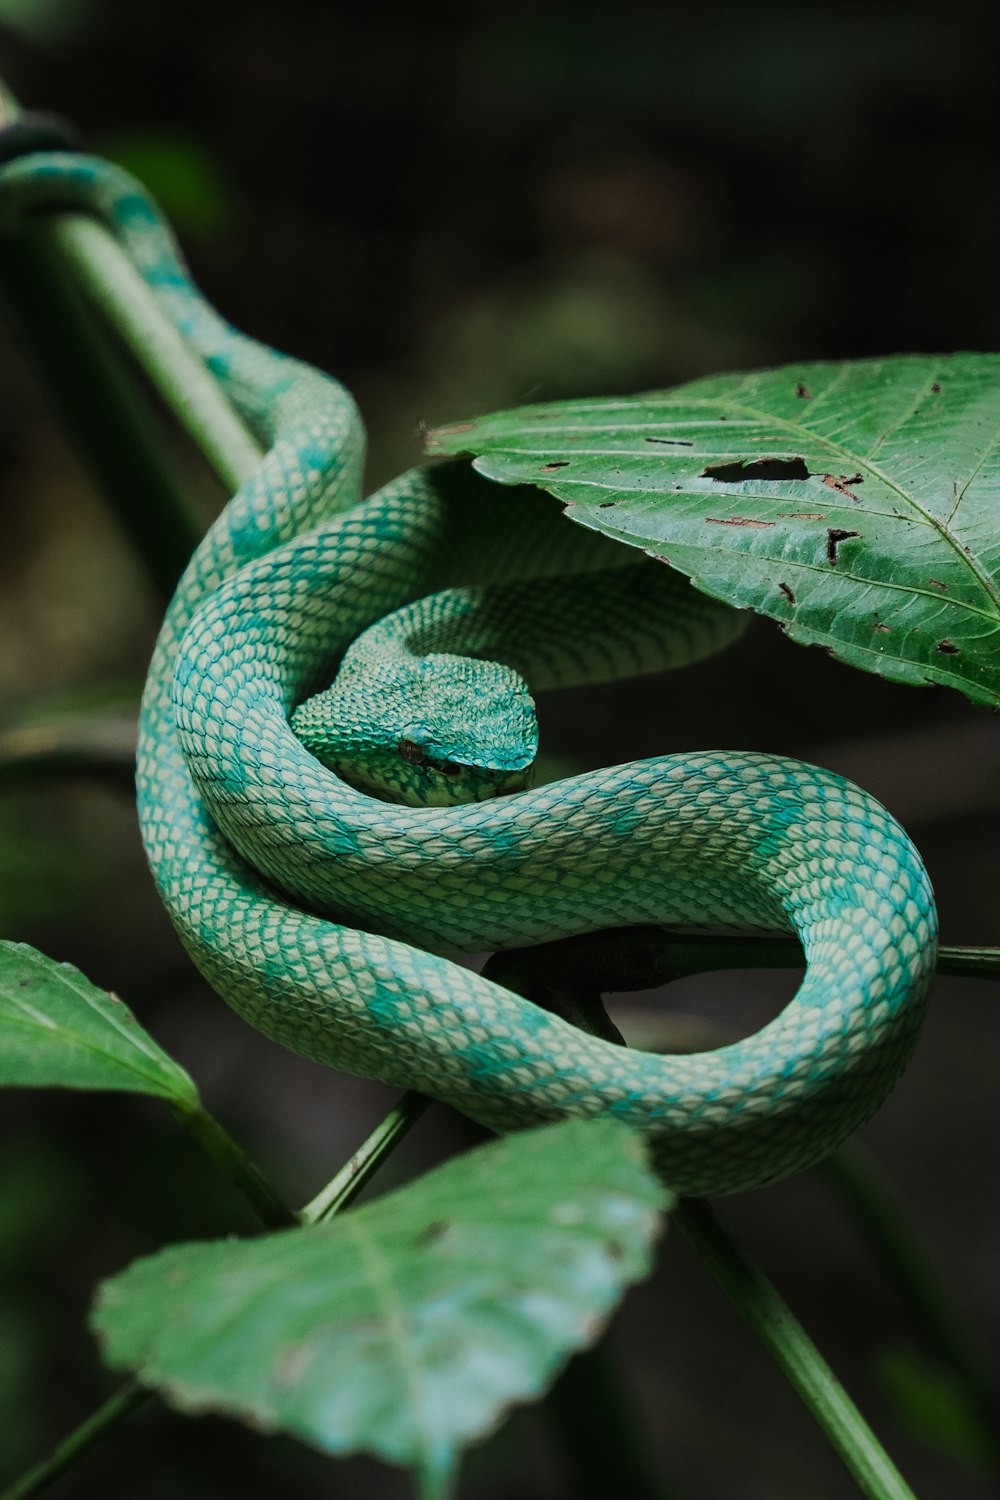 un serpent vert est recroquevillé sur une feuille